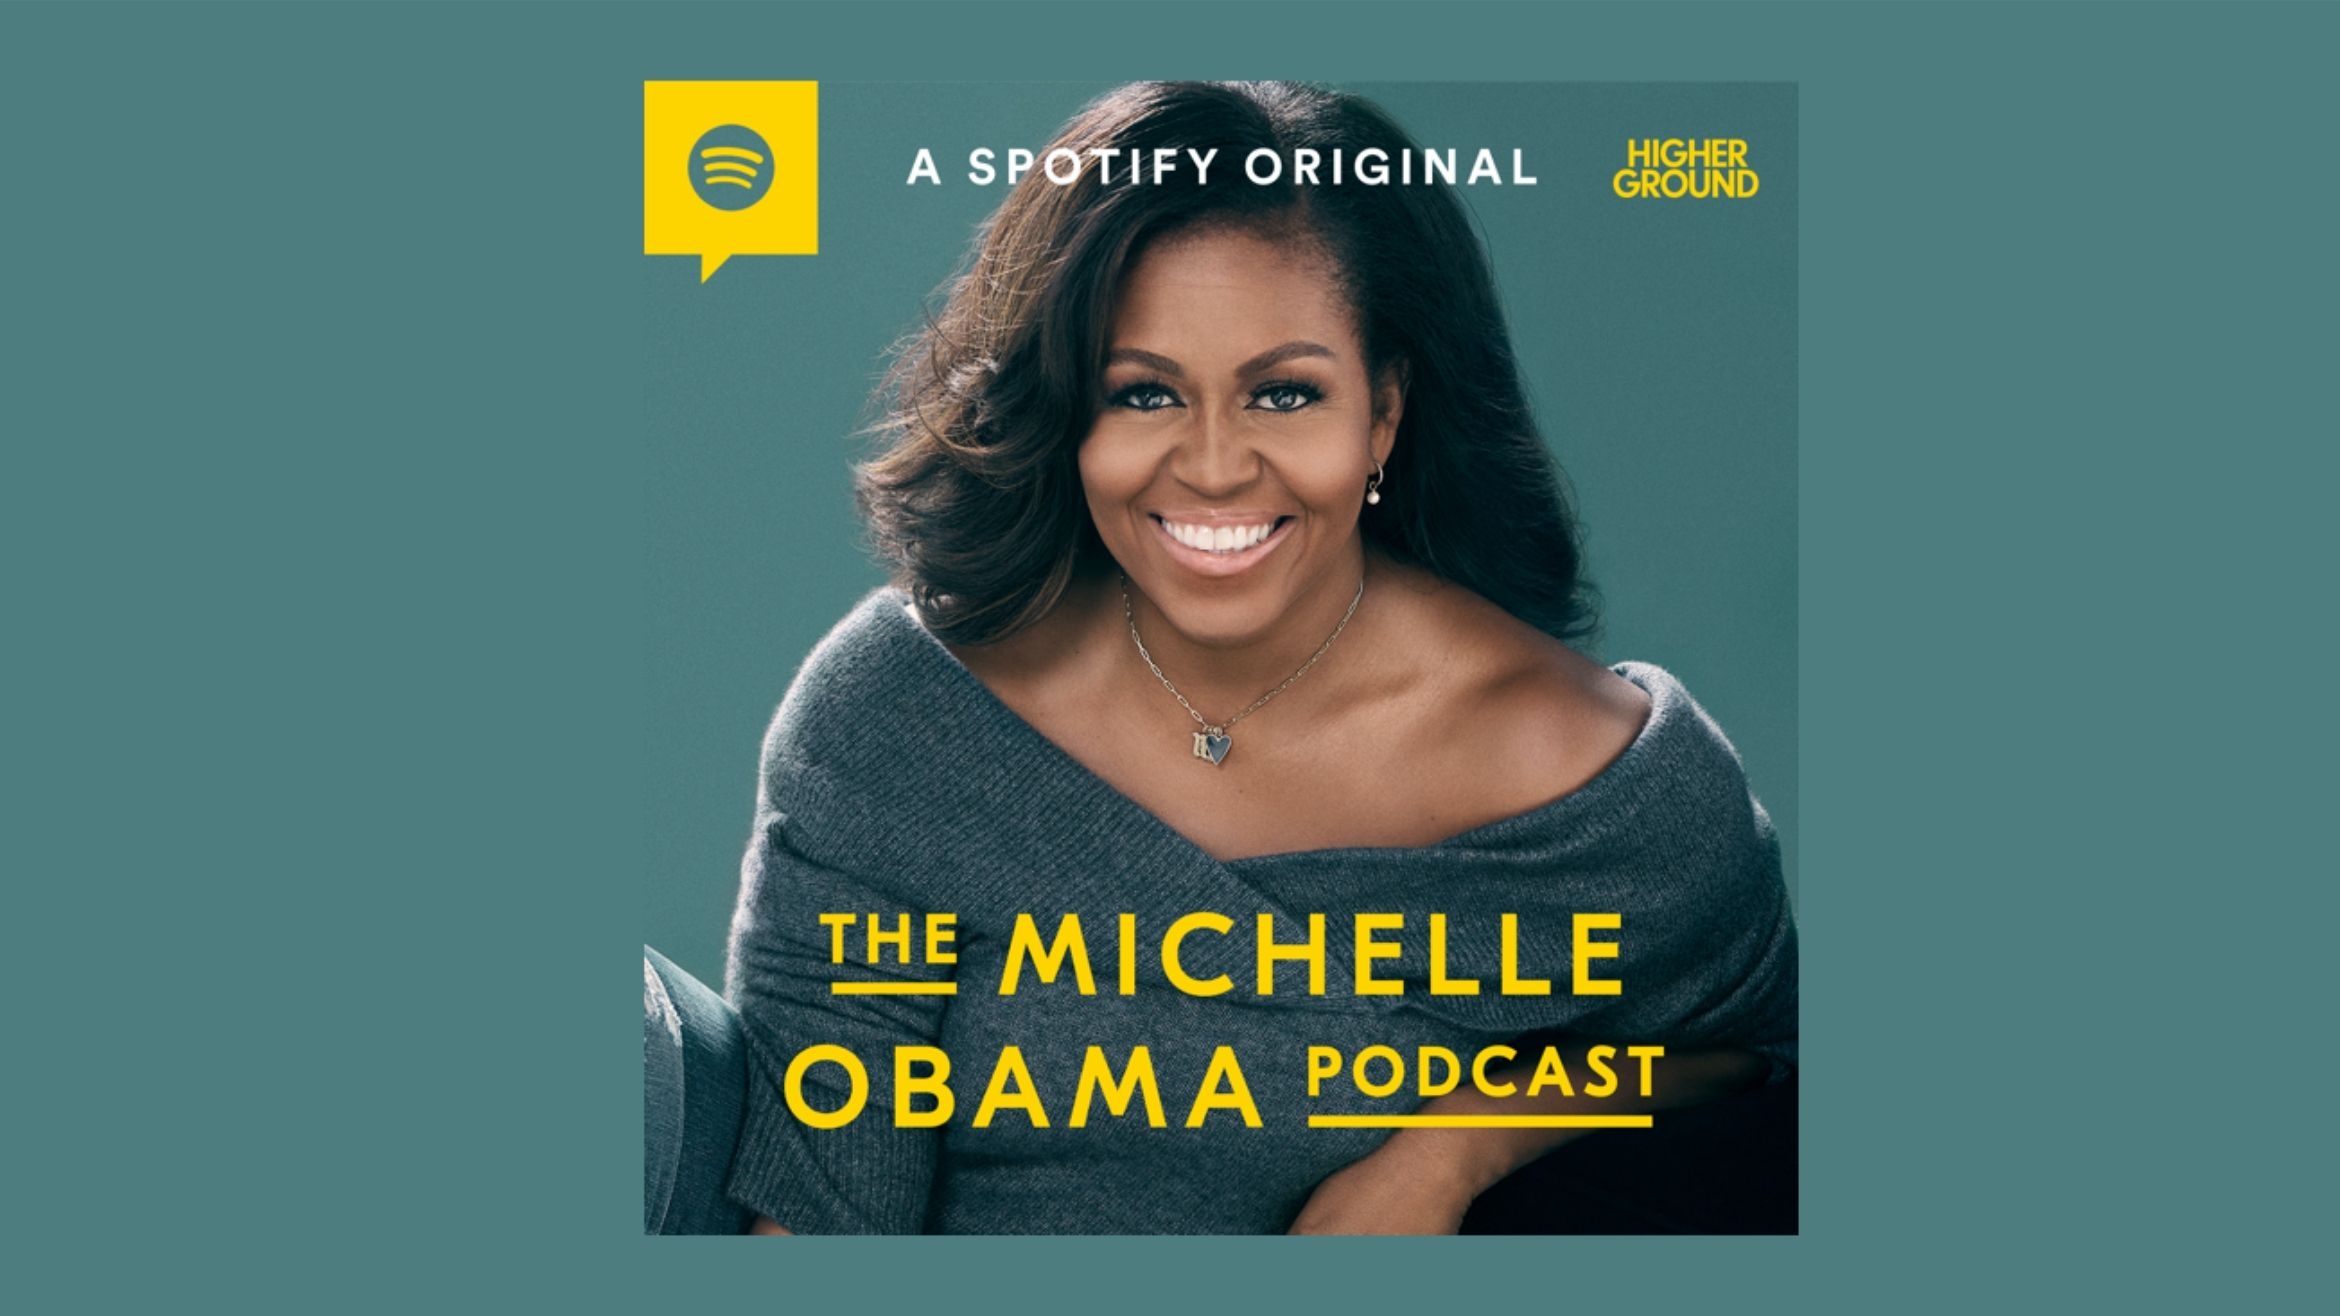 Der Podcast von Michelle Obama startet bei Spotify am 29. Juli –